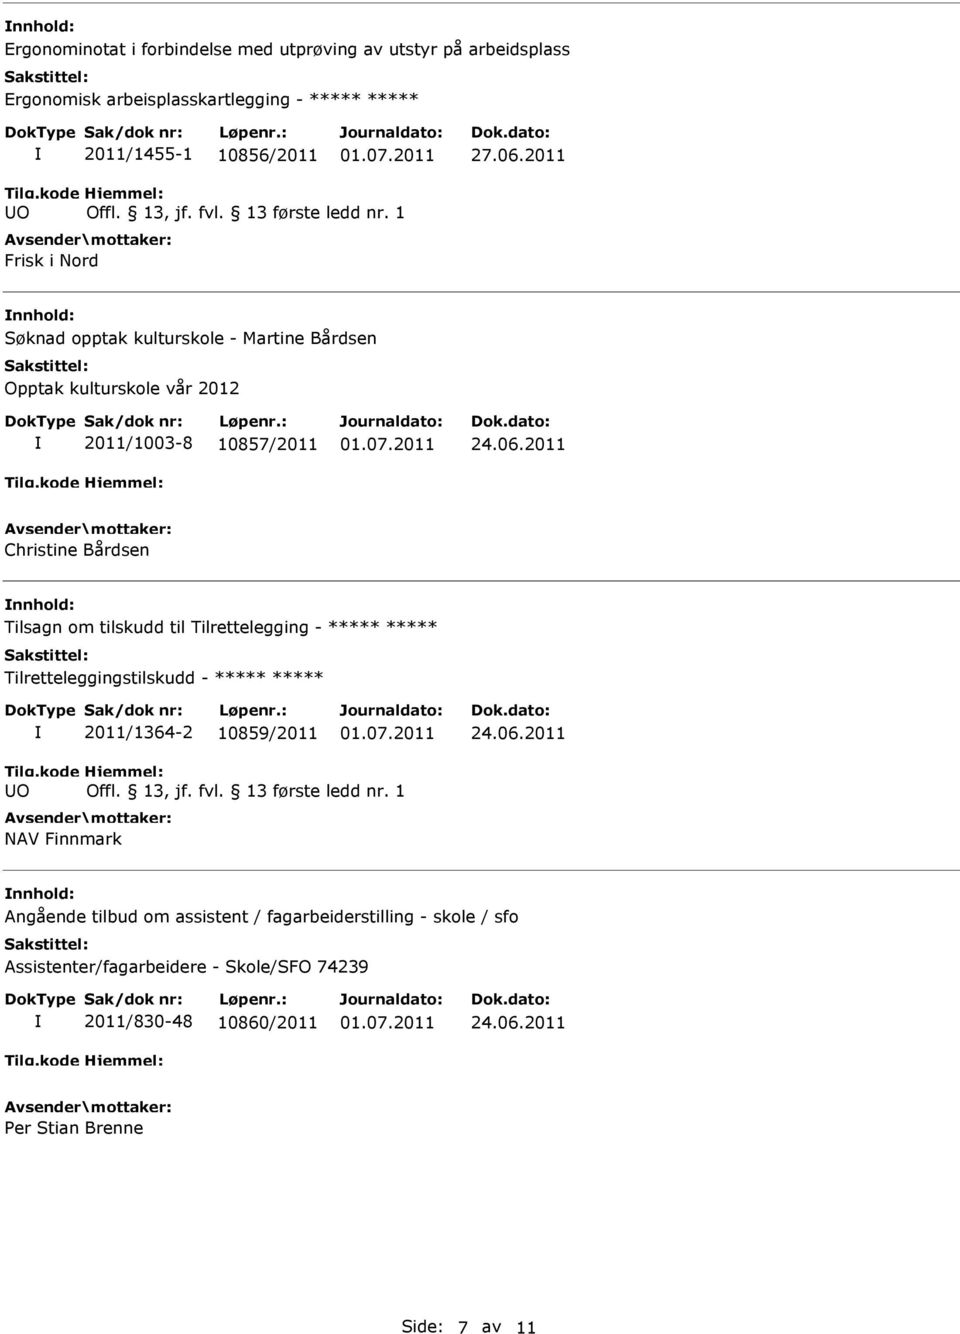 nnhold: Tilsagn om tilskudd til Tilrettelegging - Tilretteleggingstilskudd - 2011/1364-2 10859/2011 NAV Finnmark nnhold: Angående tilbud